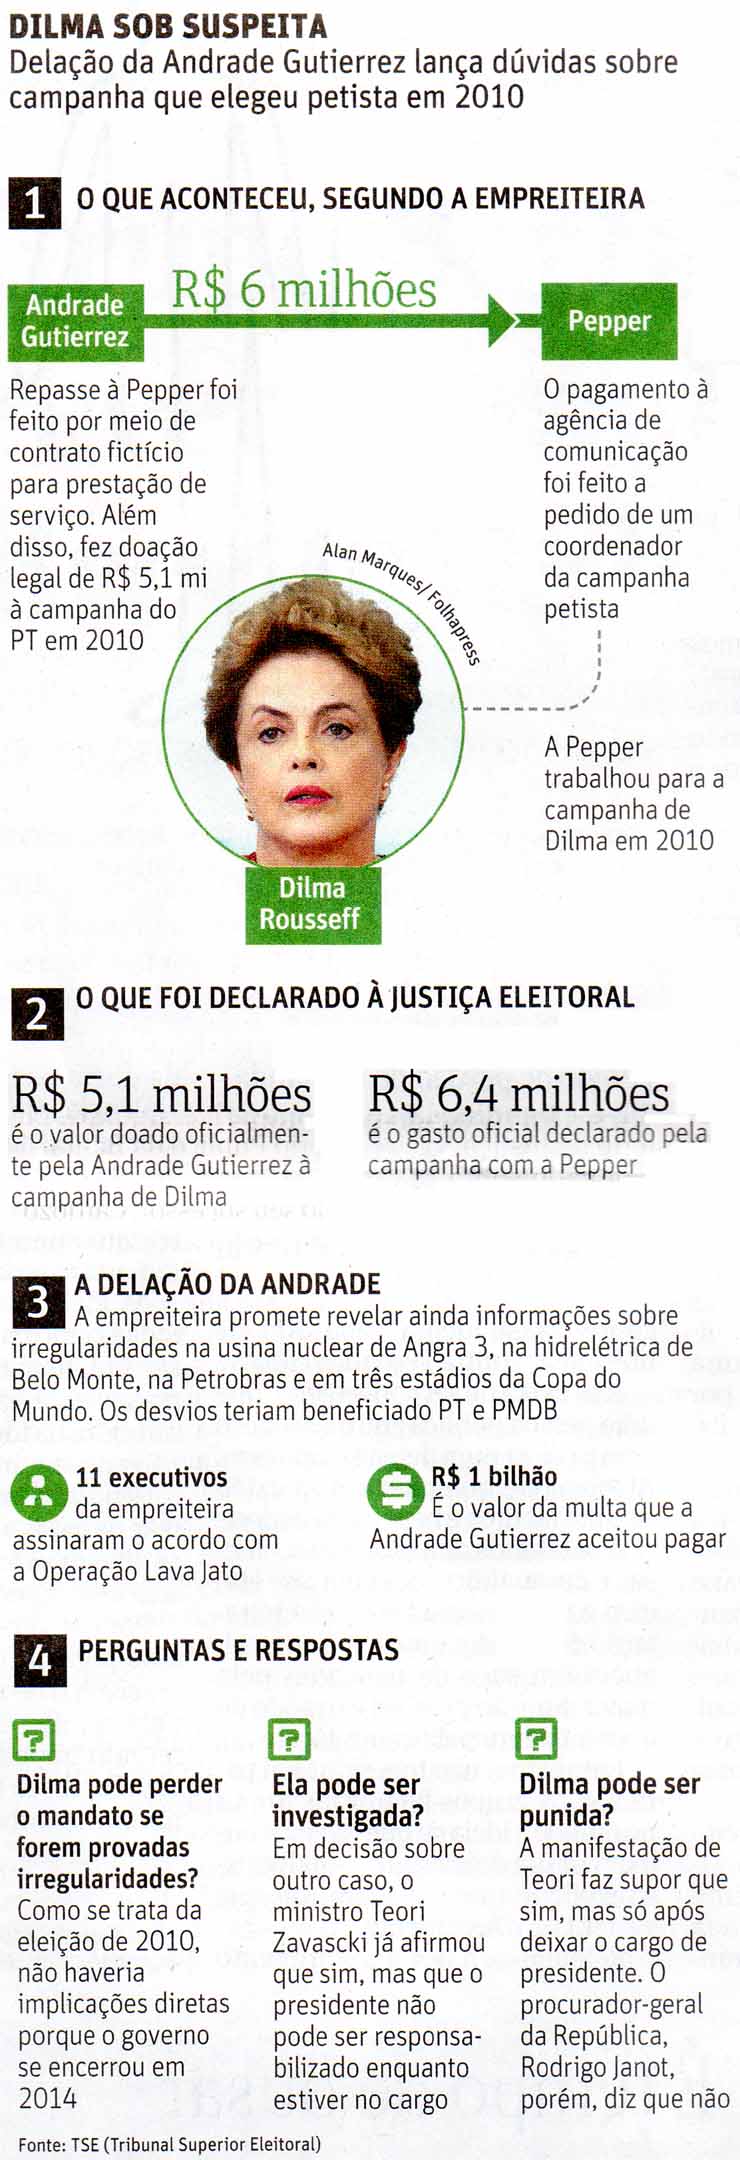 Dilma Rousseff sob suspeita